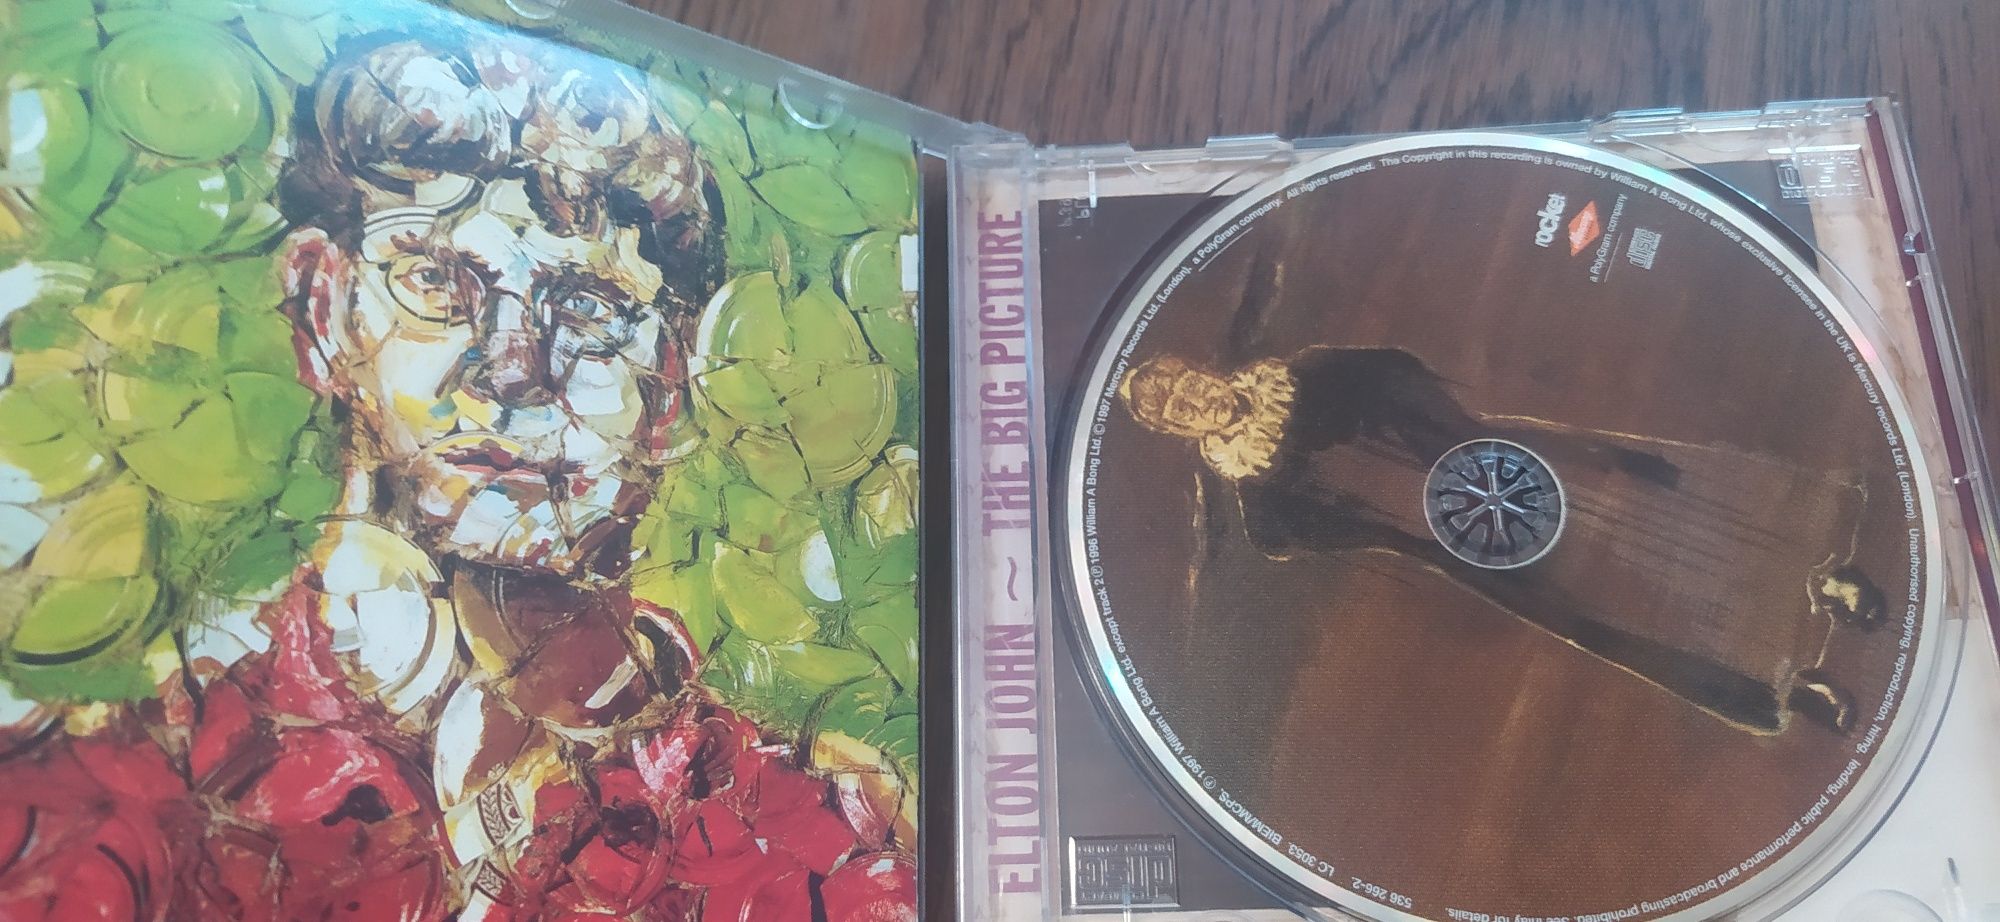 Elton John the big Picture CD